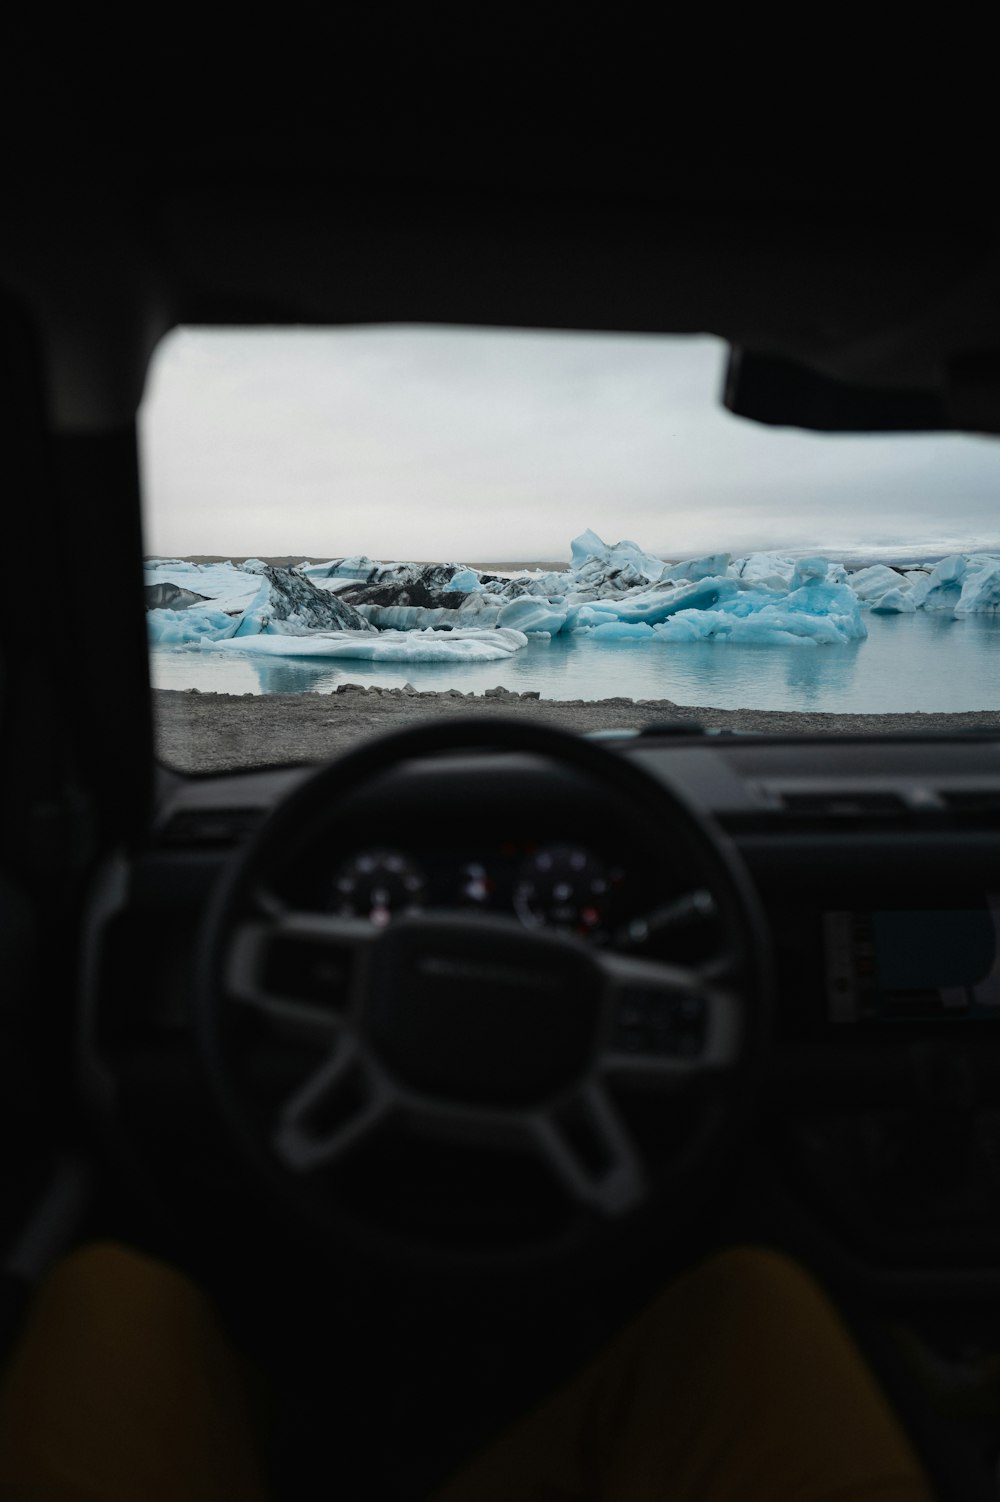 uma vista de uma geleira de dentro de um carro